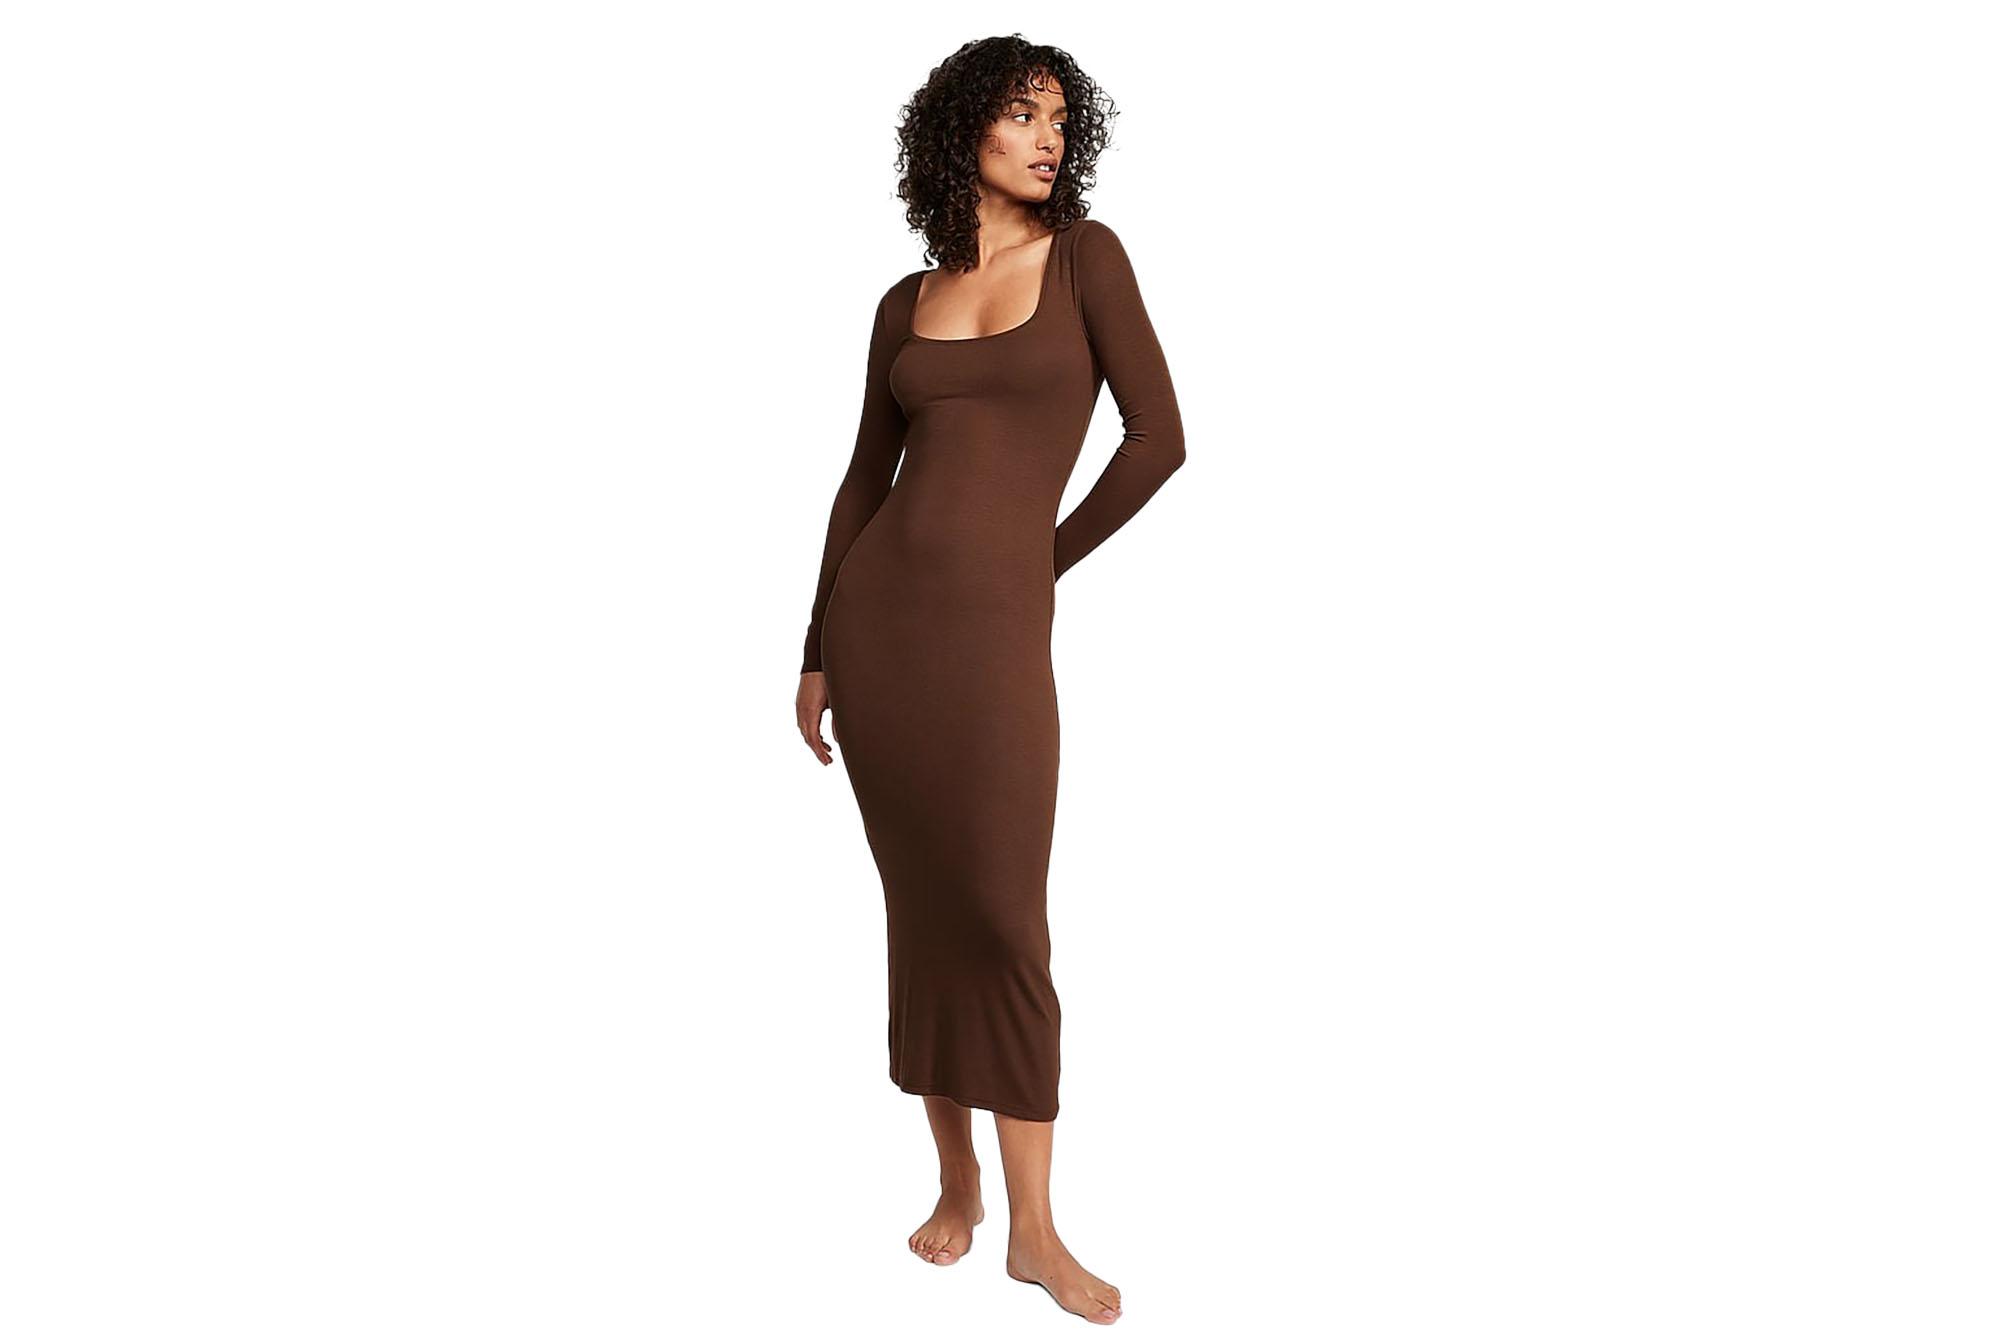 model wearing long brown dress